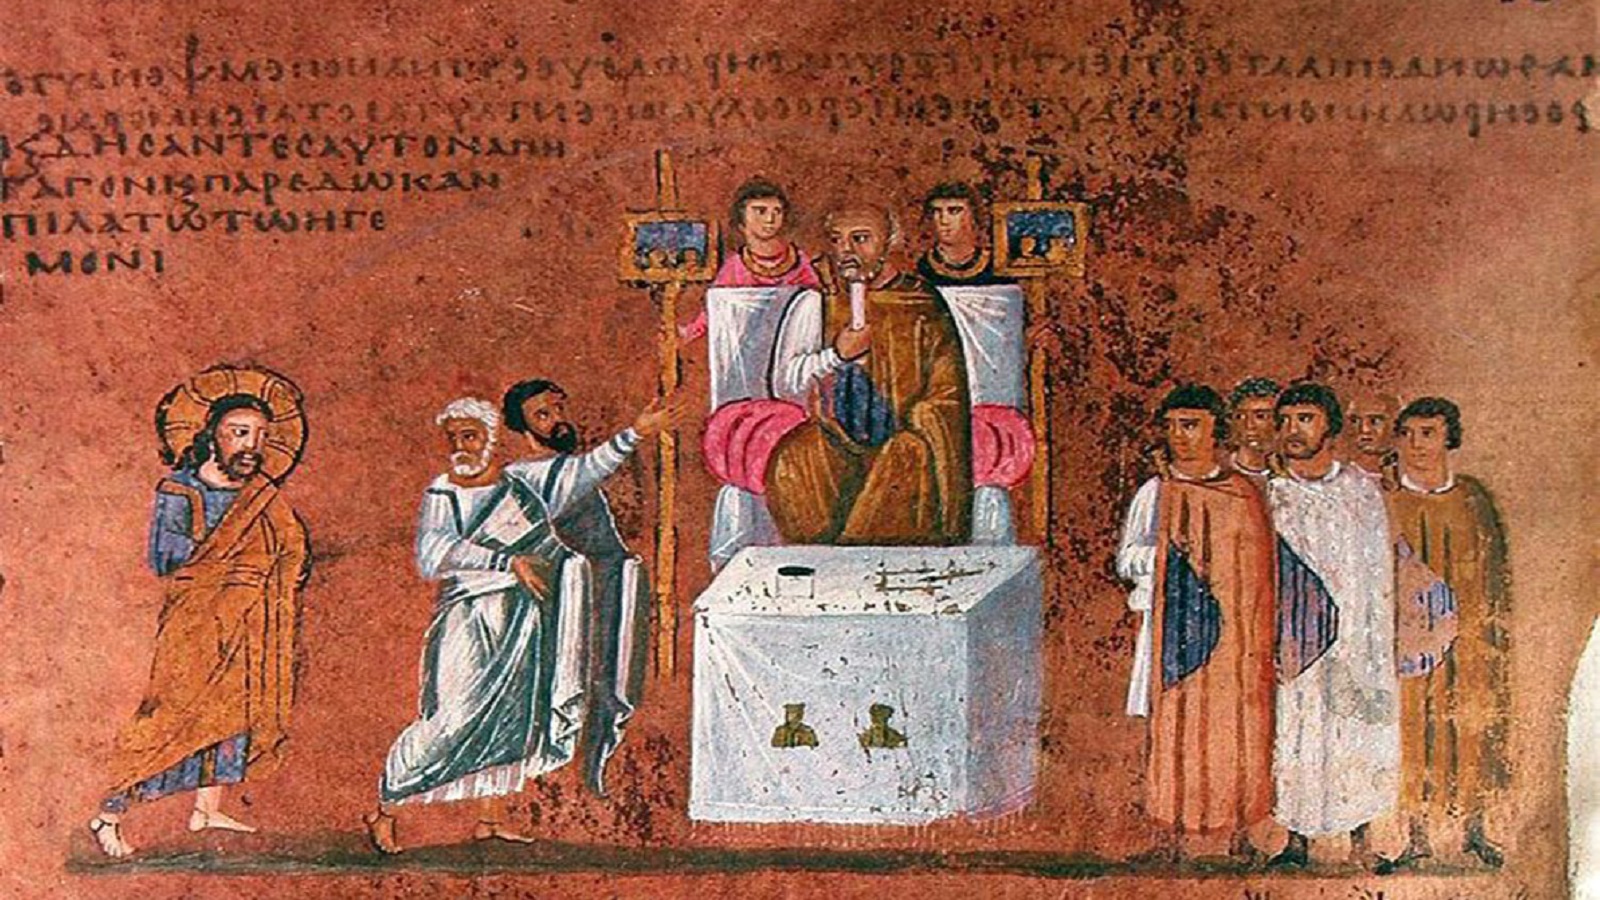 محاكمة يسوع، منمنمة من انجيل مخطوط من القرن السادس، من محفوظات كاتدرائية روسانا في كالابريا، جنوب إيطاليا.